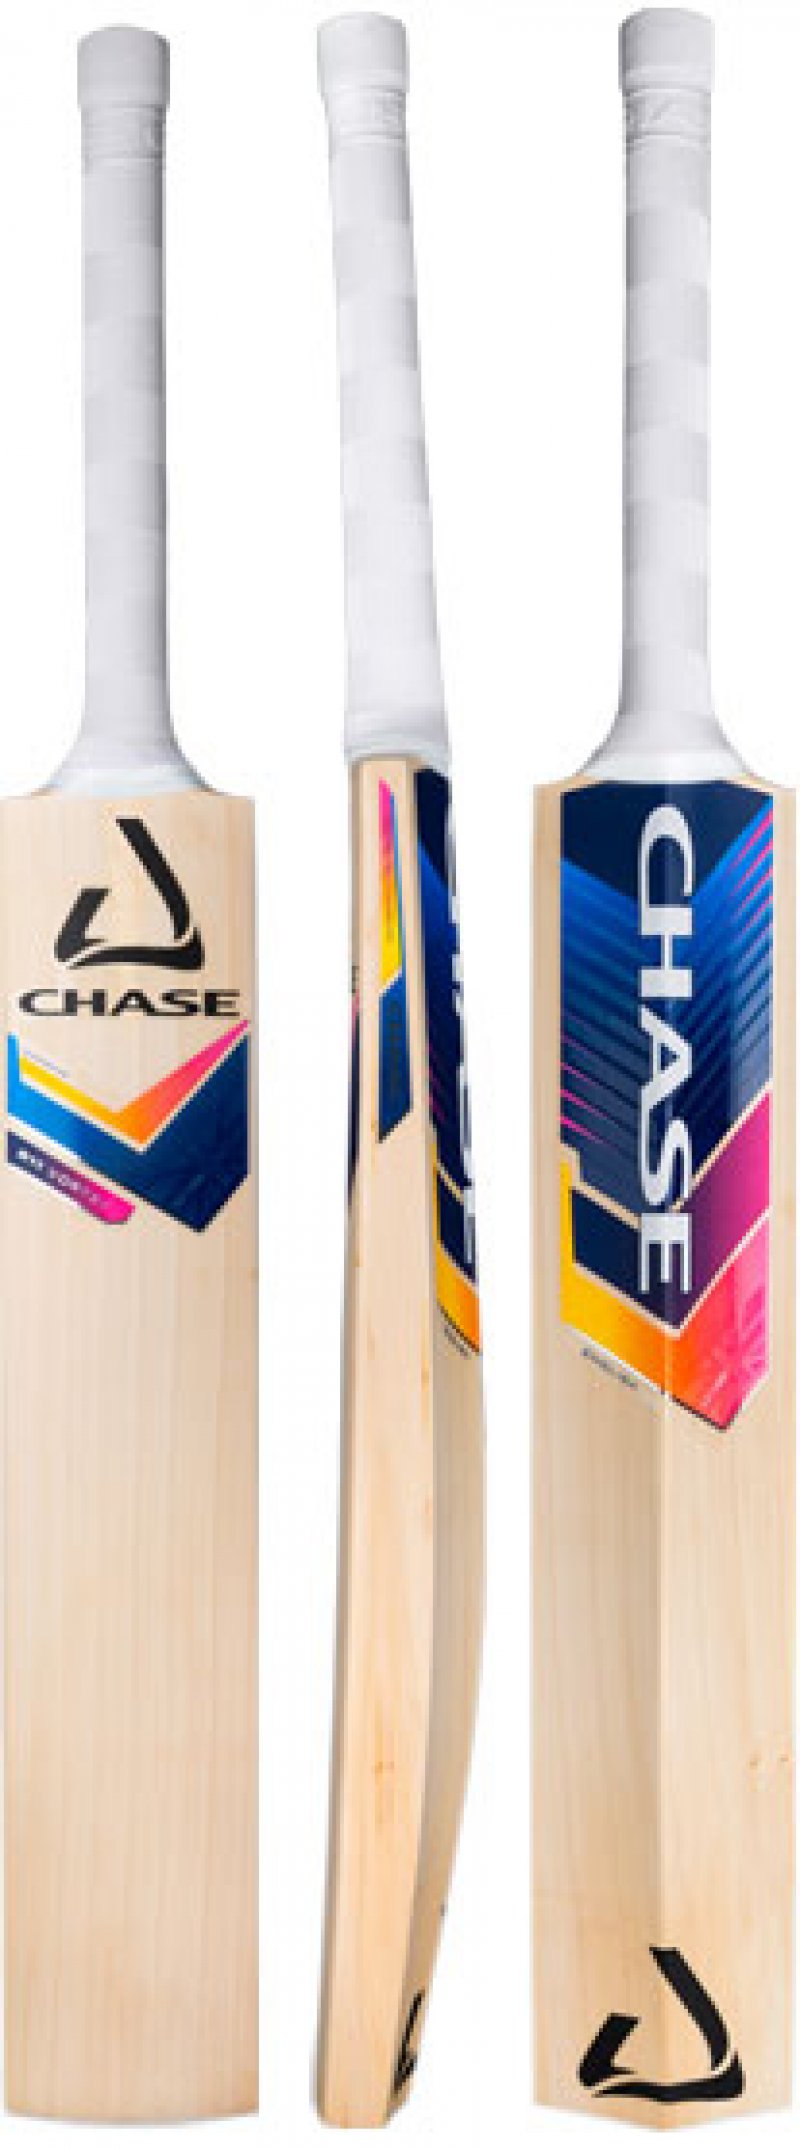 Chase Vortex R7 Cricket Bat